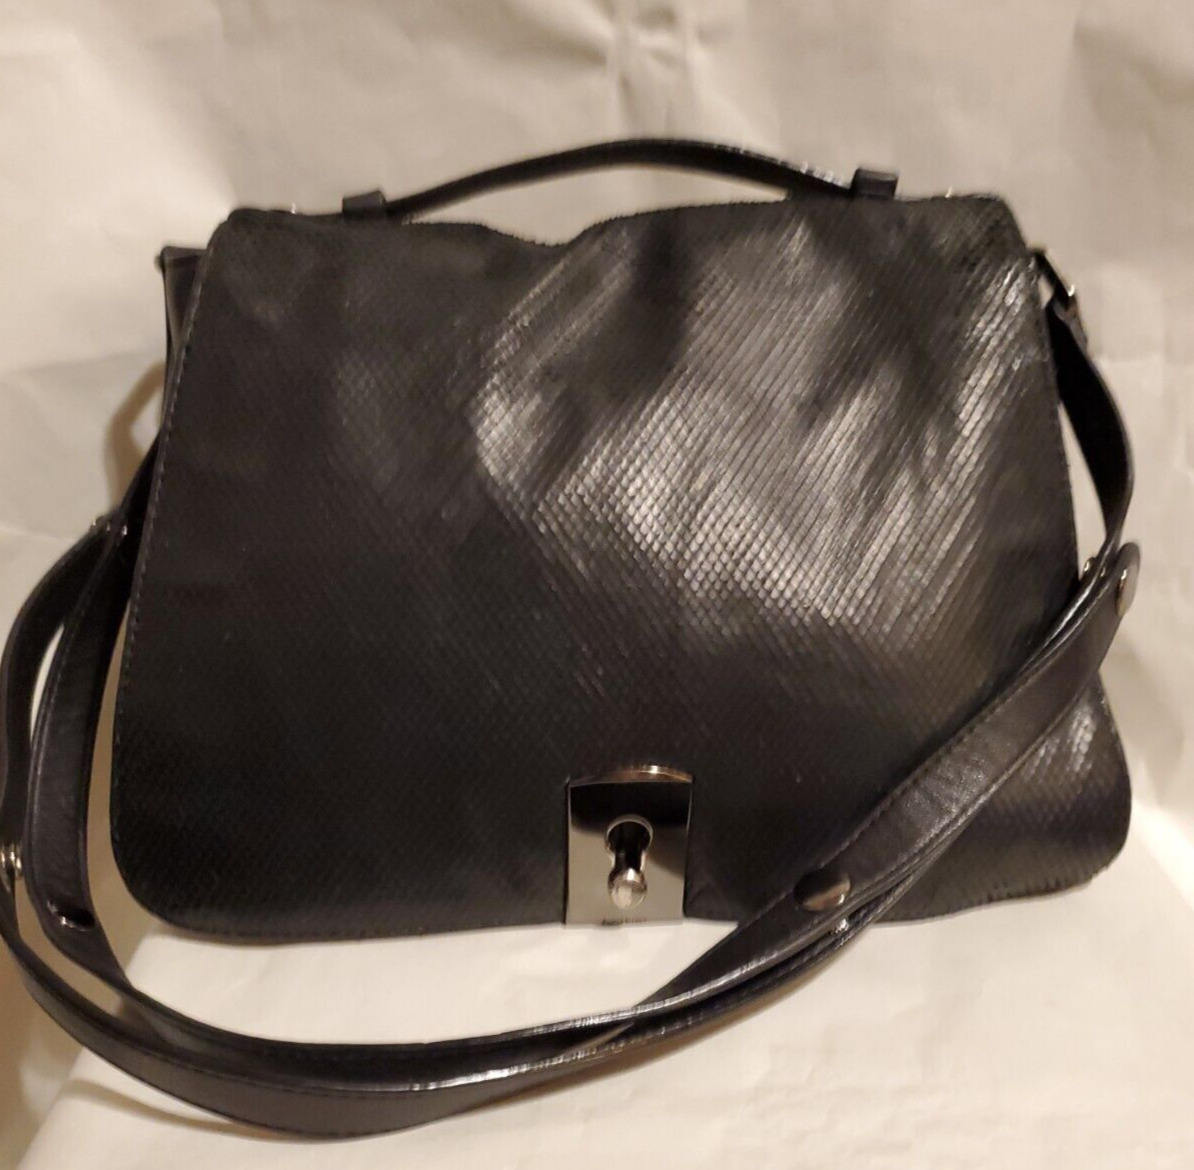 Botkier Black Super Soft Leather & Snake Satchel / Handbag / Shoulder Bag